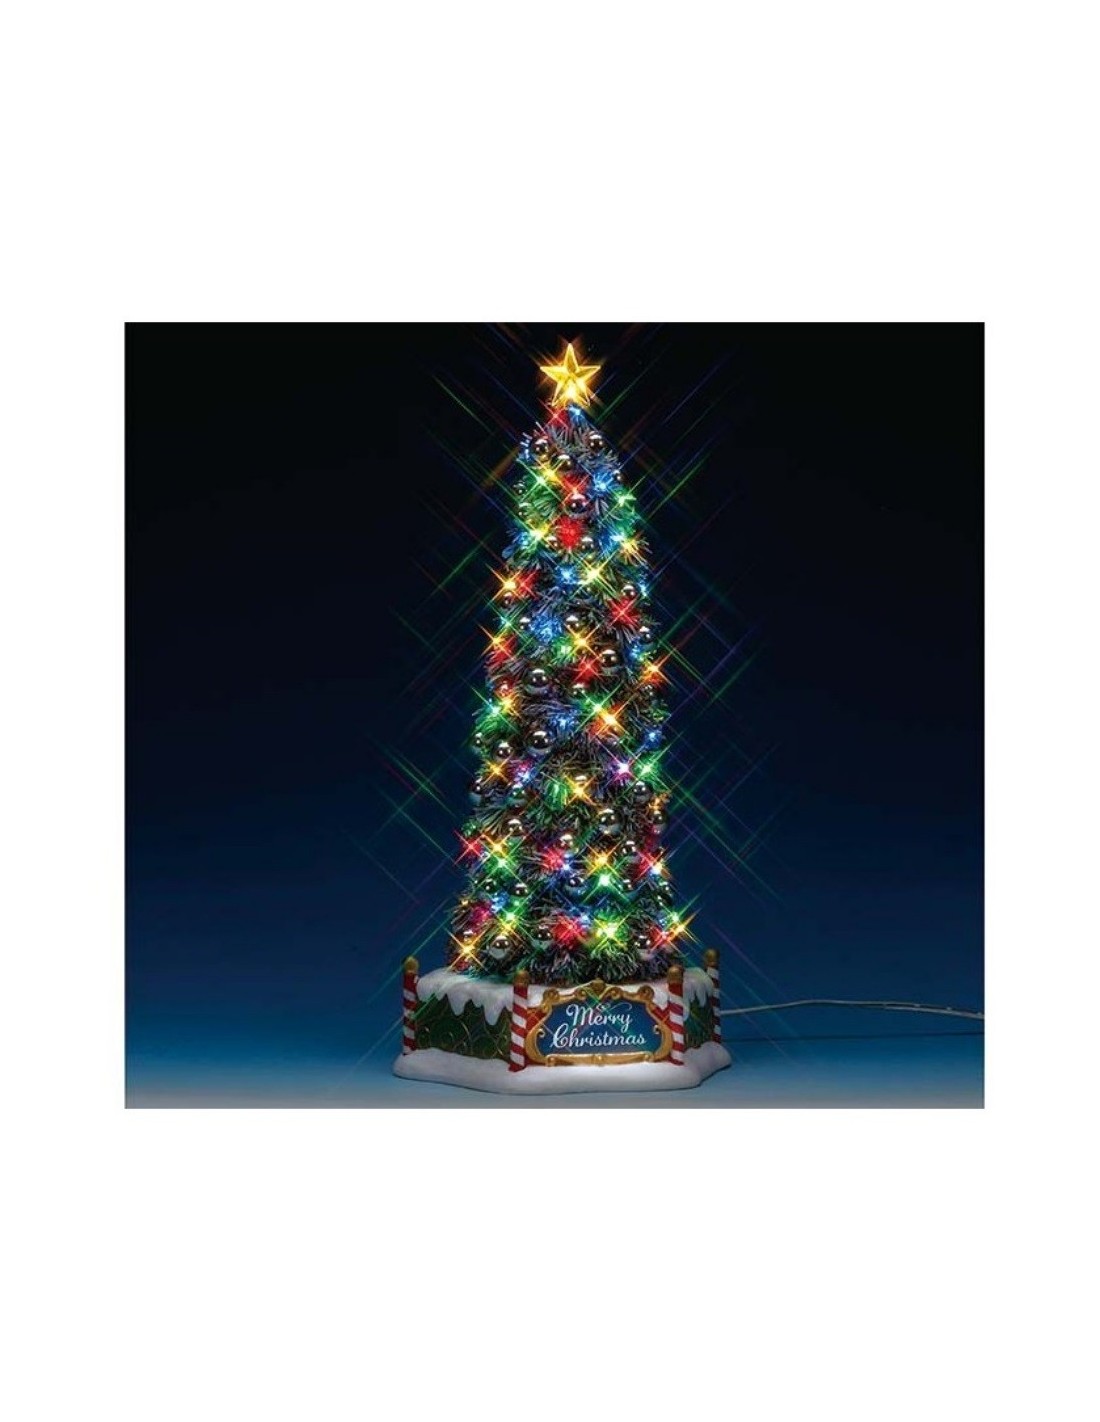 Foto Albero Di Natale Addobbato.Albero Di Natale Addobbato New Majestic Christmas Tree Lemax A Soli 84 90